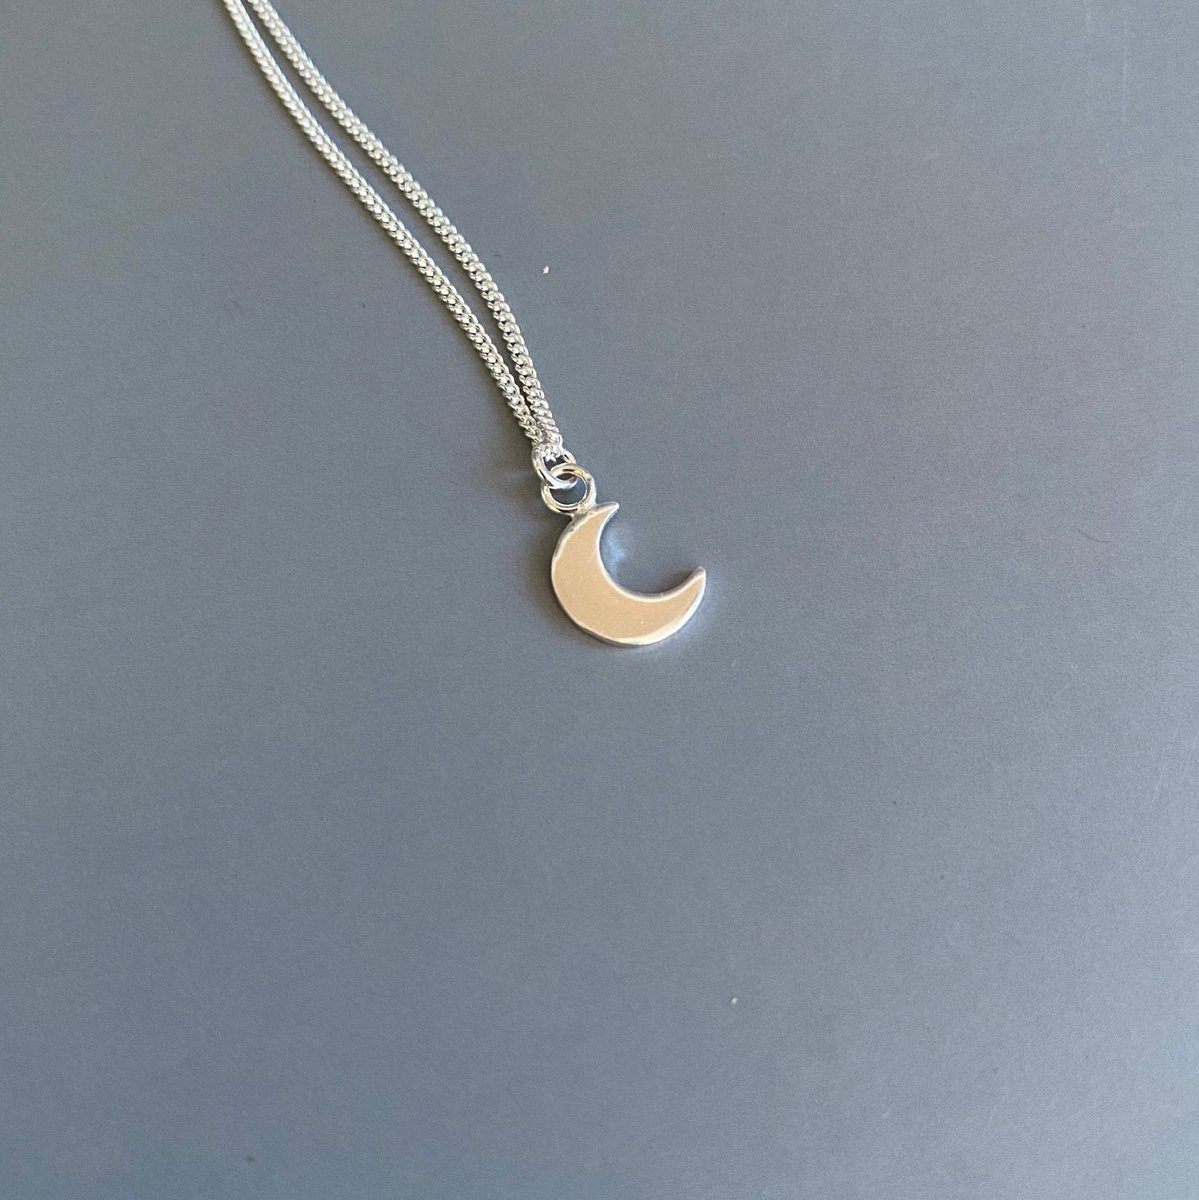 Tiny Crescent Moon Pendant tuppu.net/262c9ad0 #bizbubble ##UKGiftHour #giftideas #UKHashtags #HandmadeHour #shopsmall #MHHSBD #inbizhour #TinyNecklace